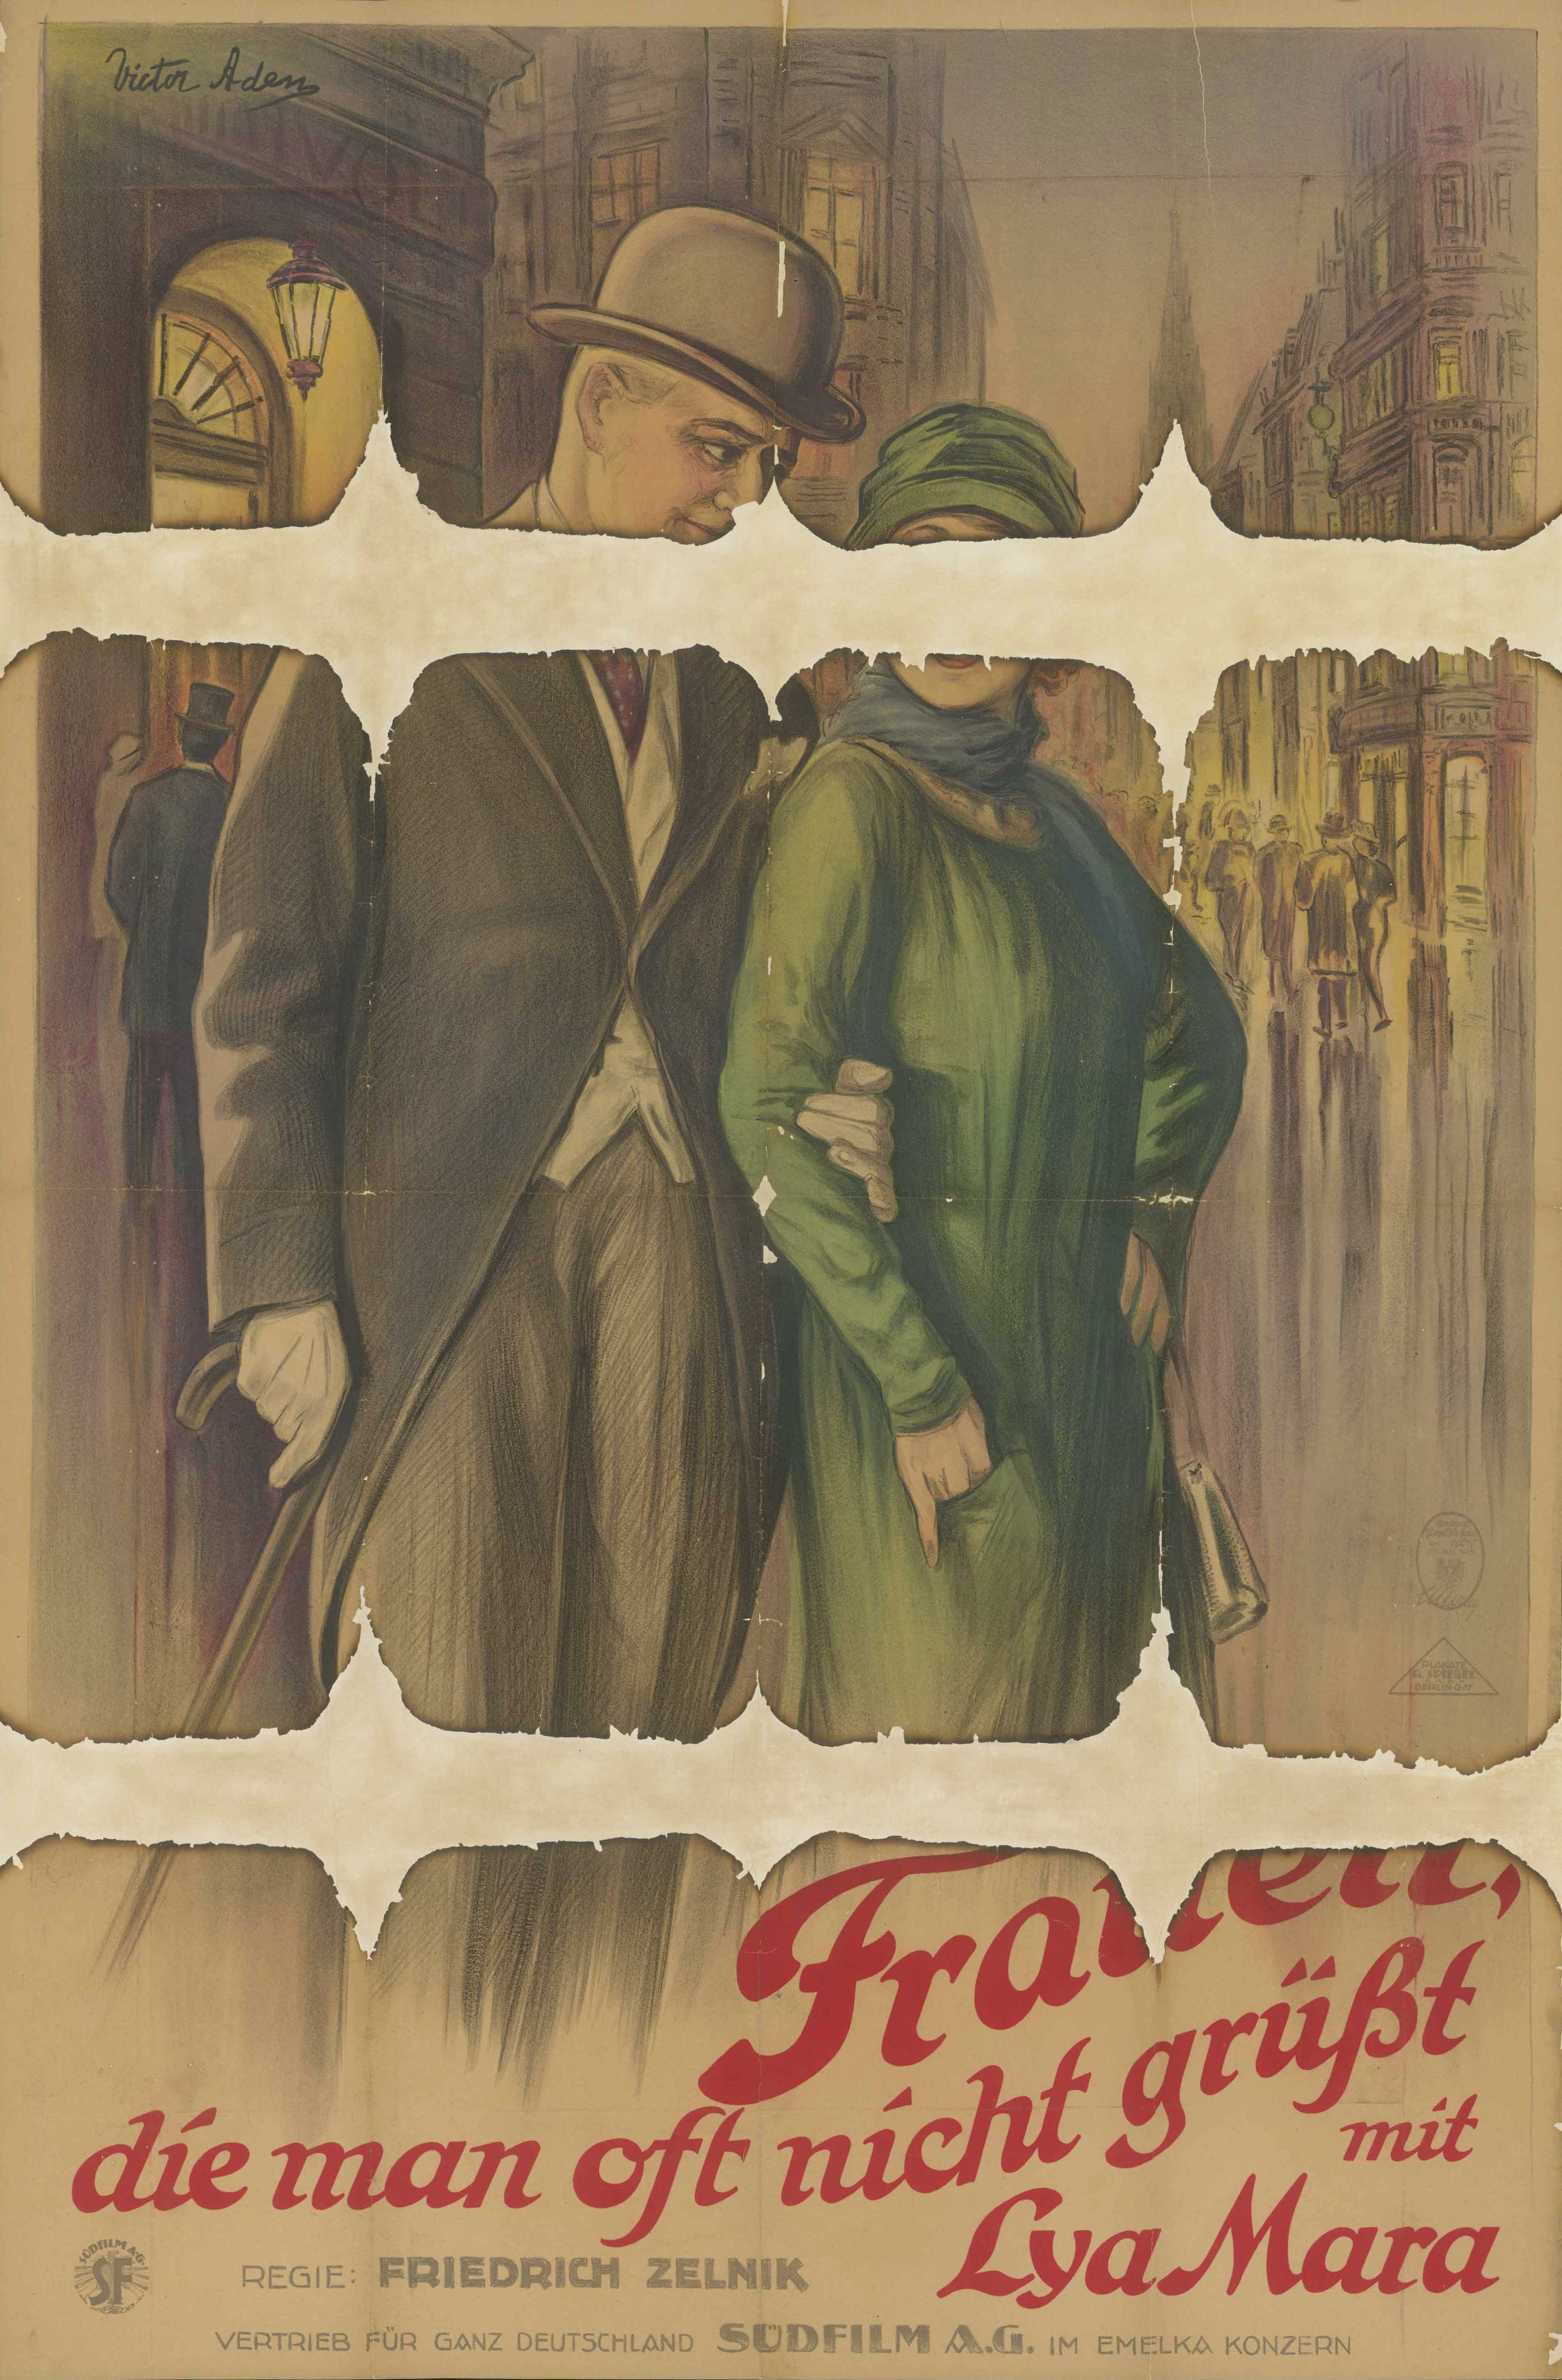 Film poster for Frauen, die man oft nicht grüßt, Germany 1925